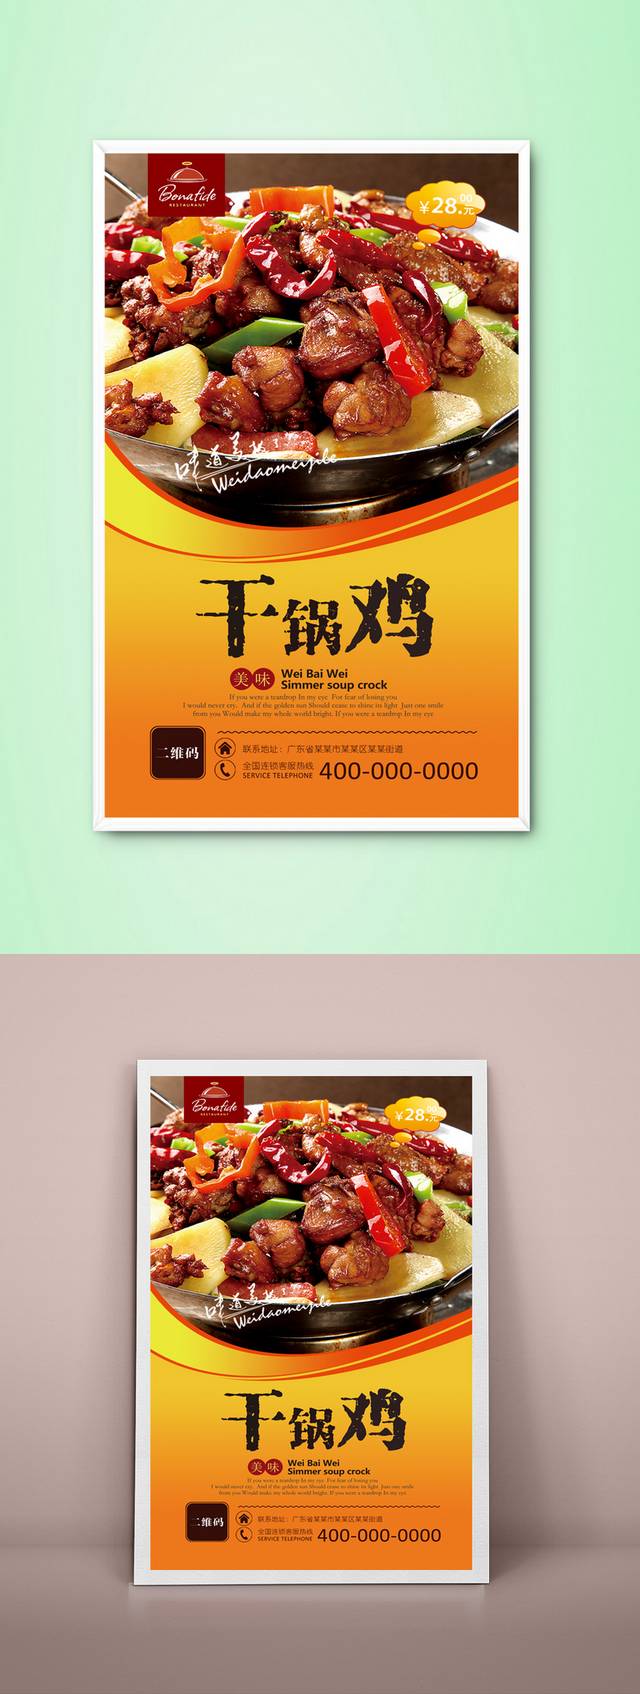 干锅鸡文化宣传海报设计